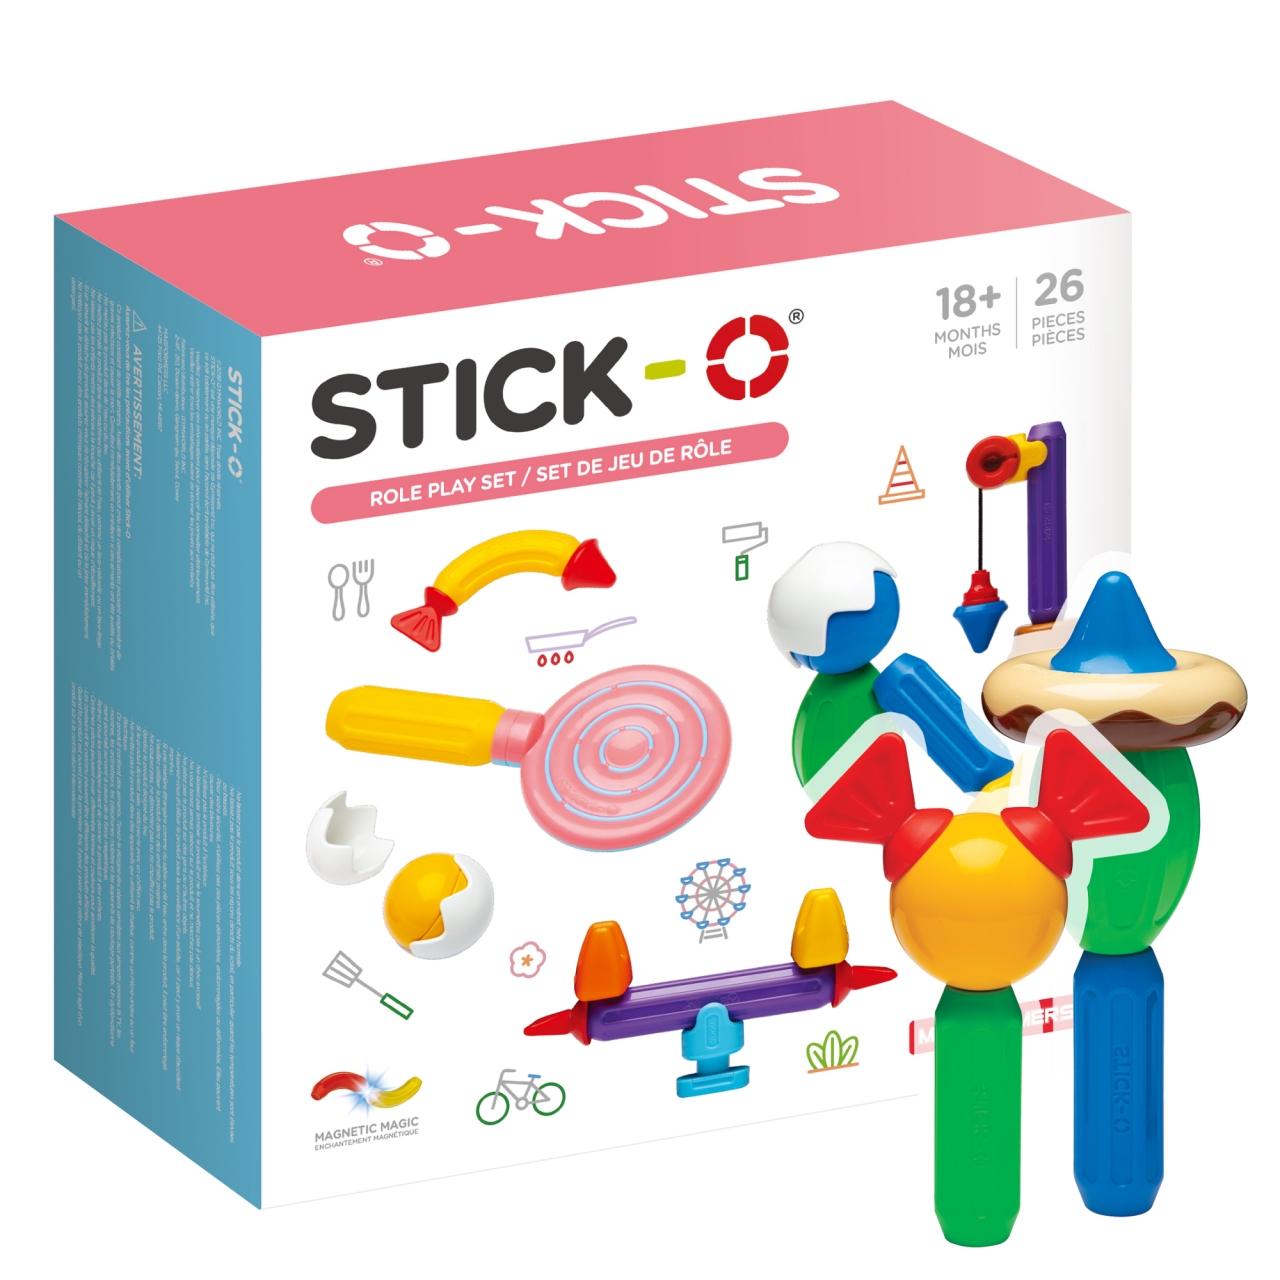 Конструктор магнитный STICK-O Roleplay Set 26 деталей, 902005 для детей от 1 года